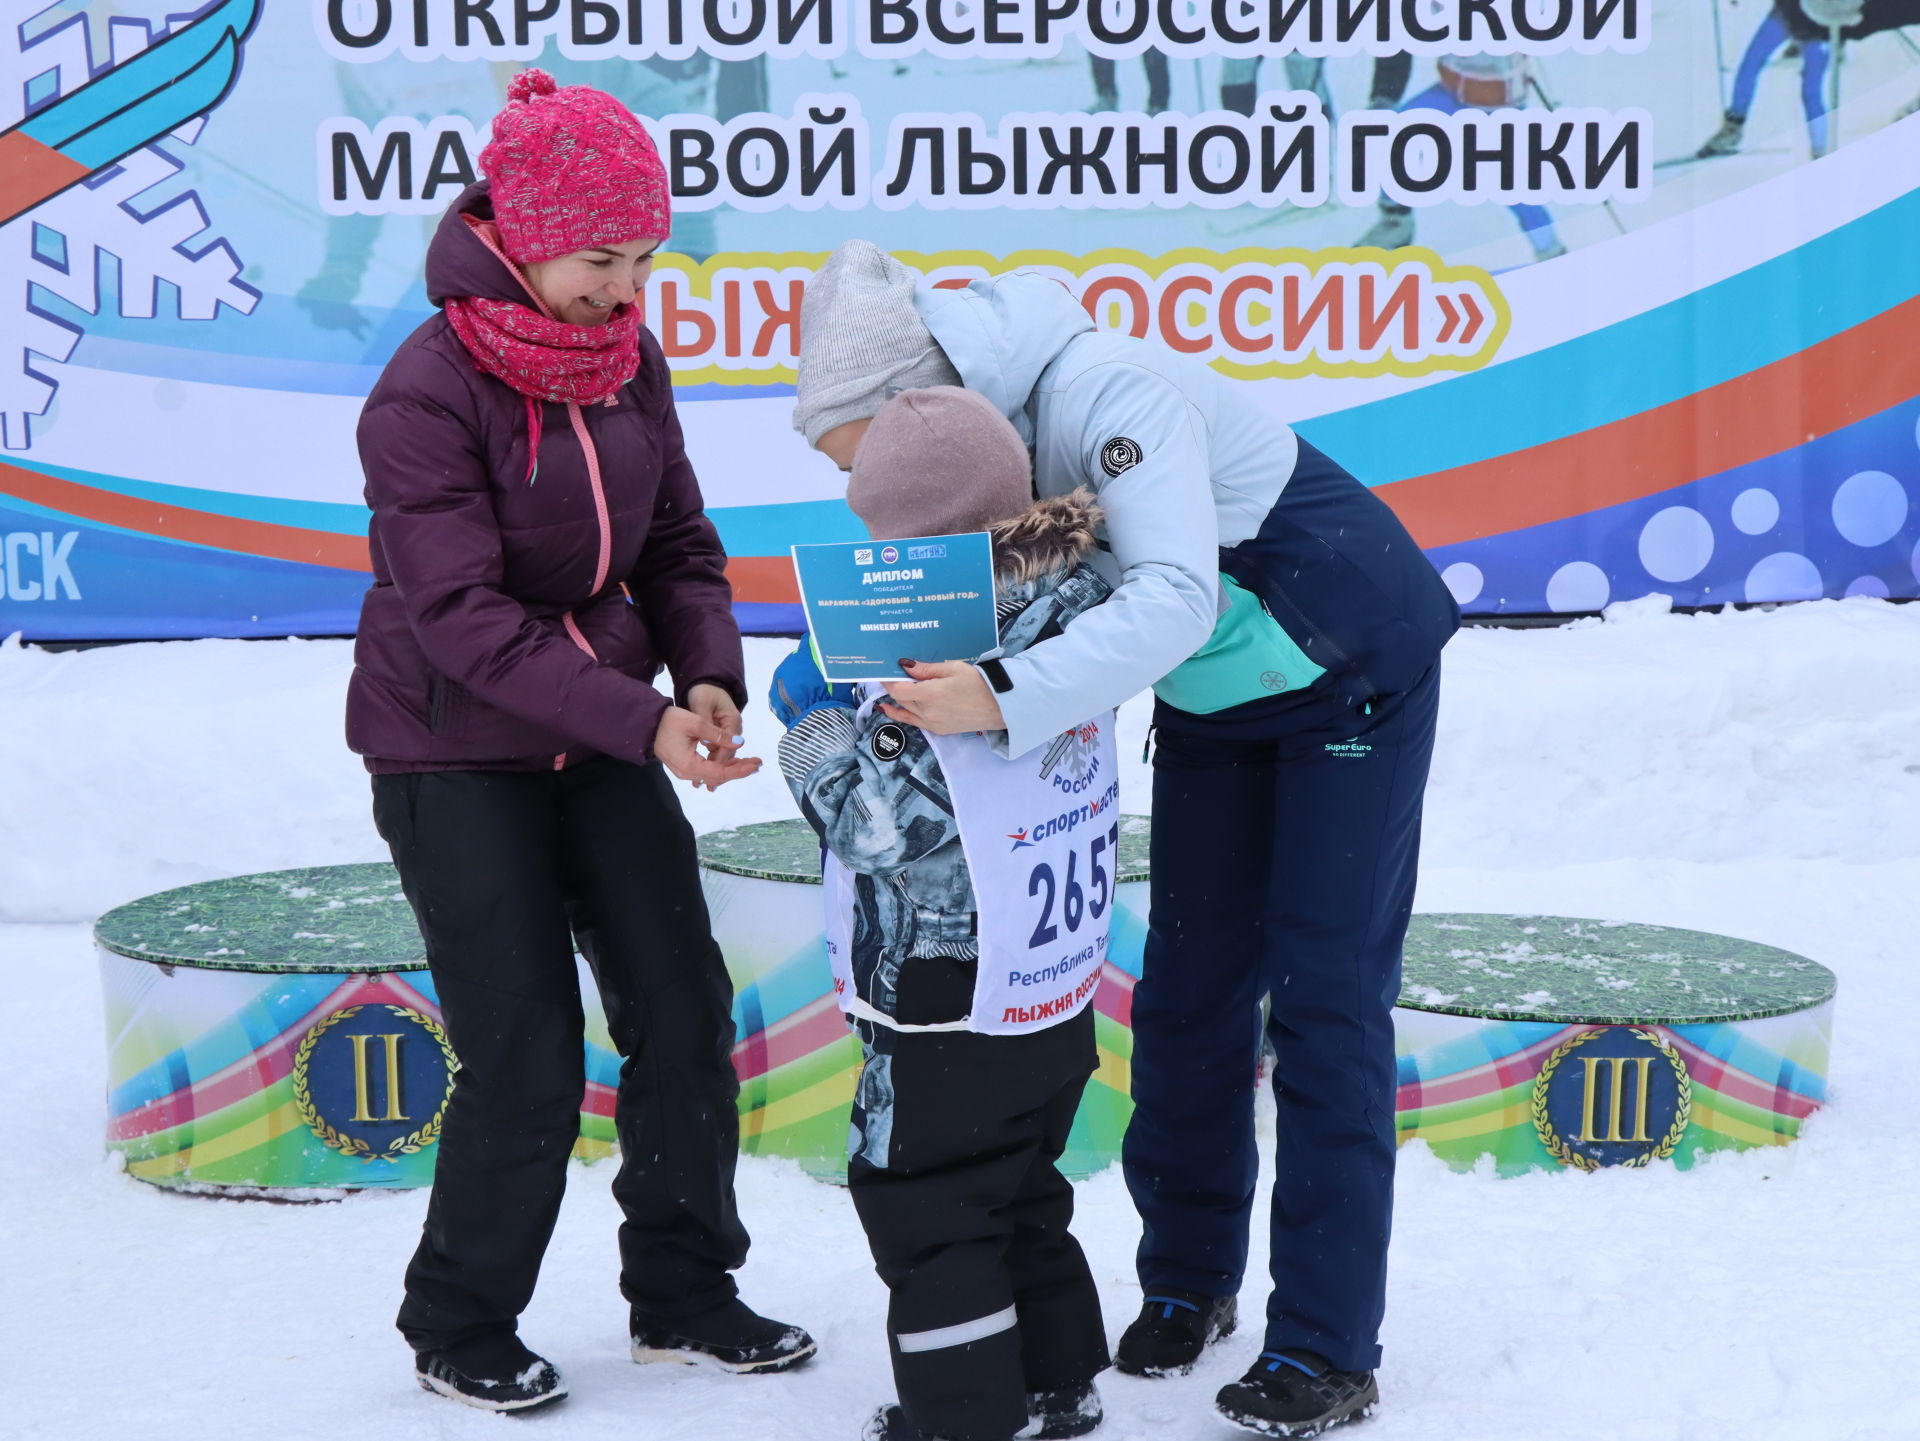 Лыжня Татарстана 2022